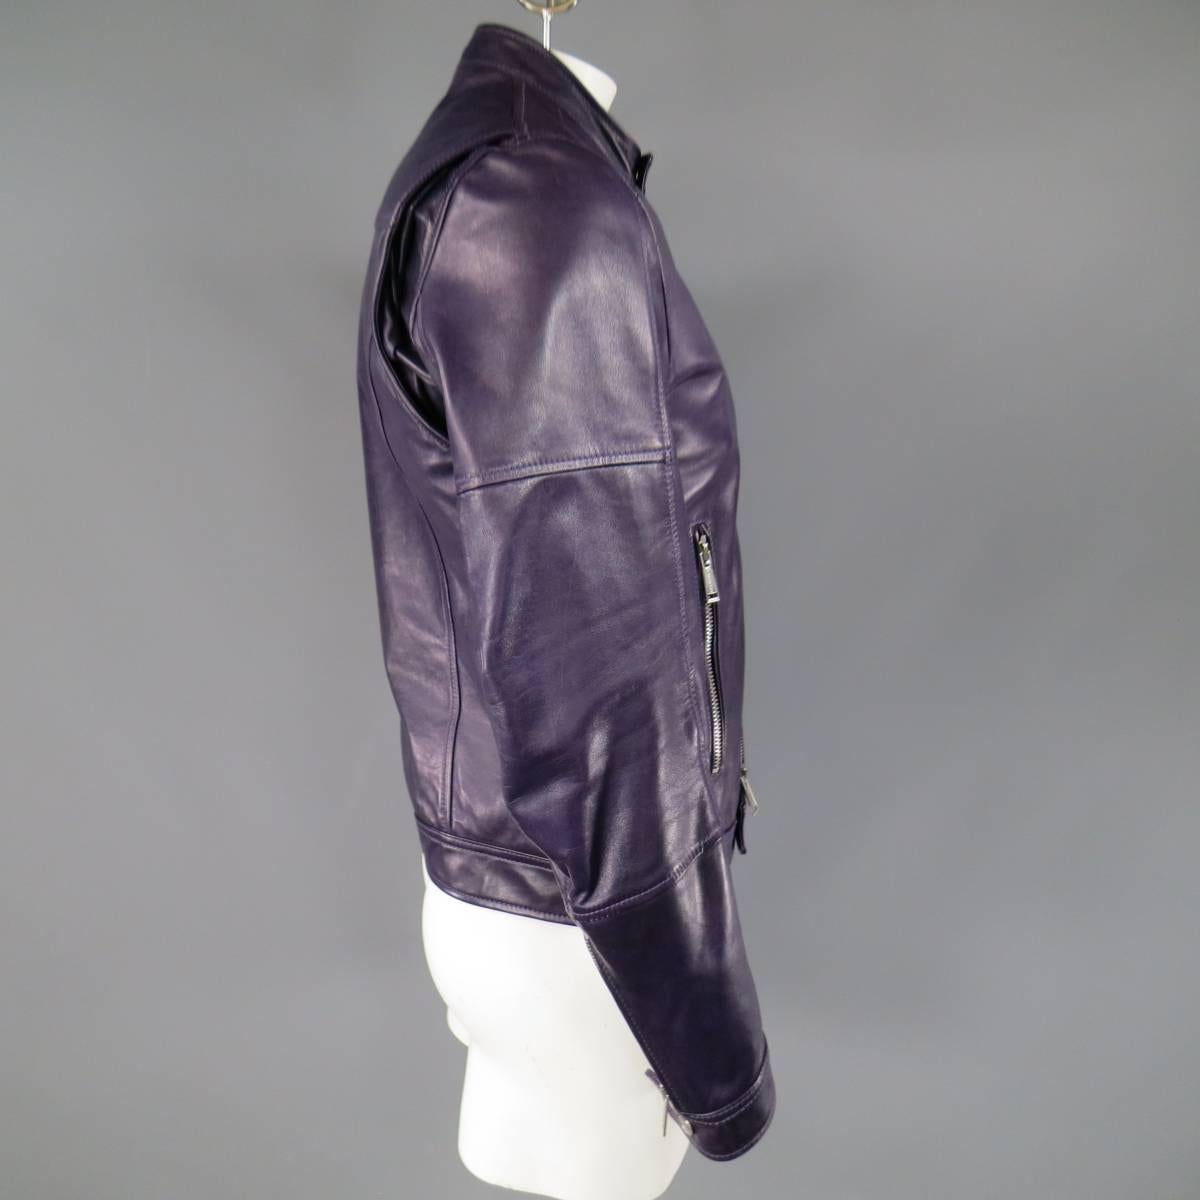 purple leather jacket mens